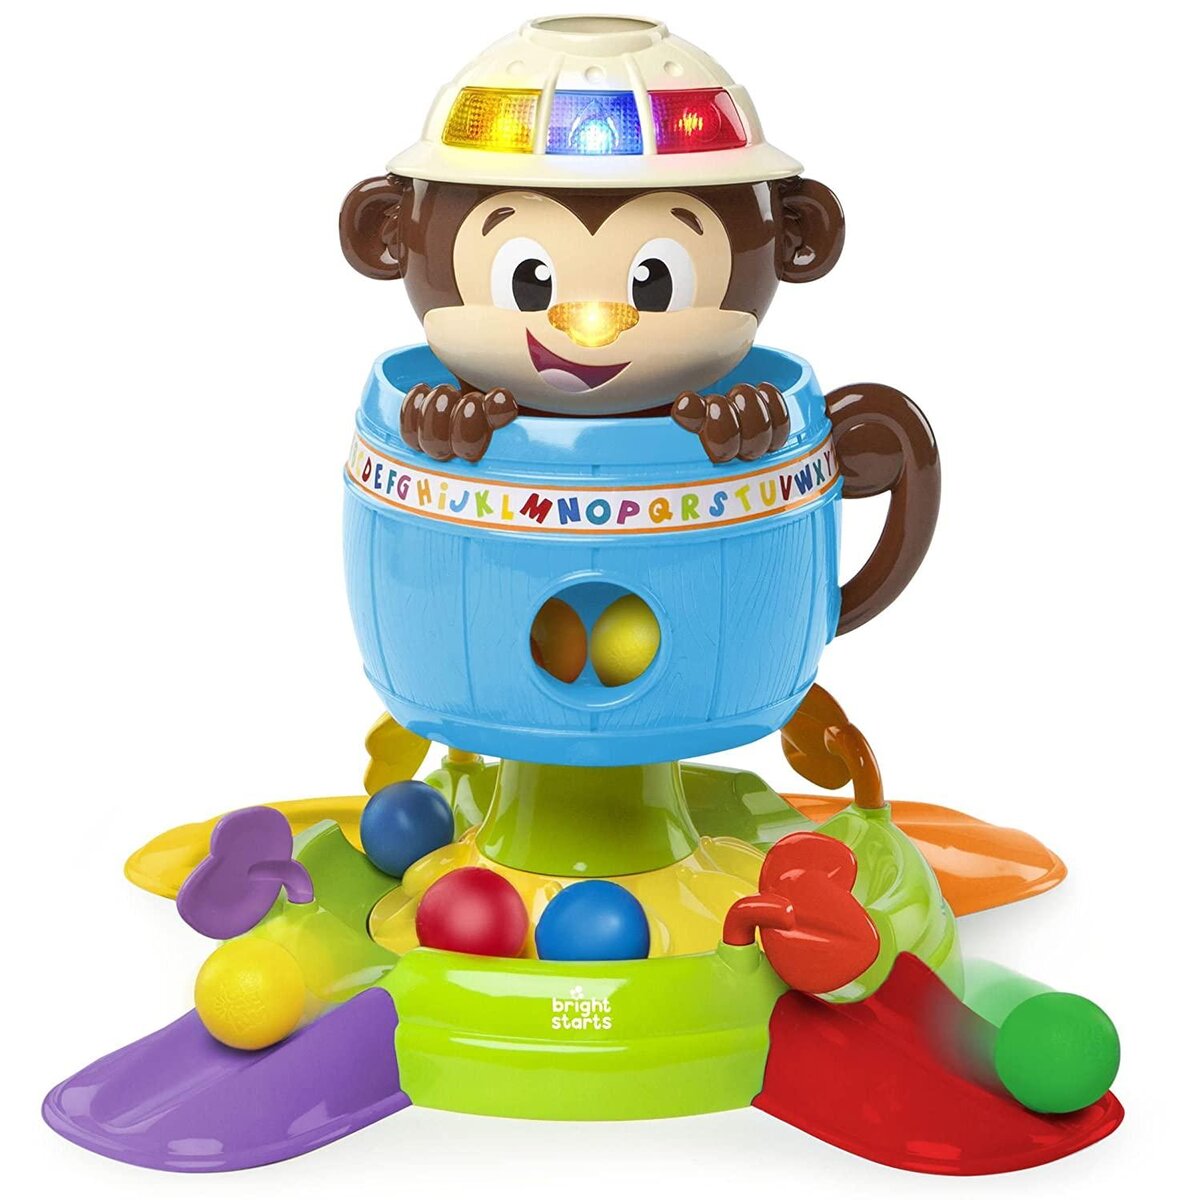 Игрушки для детей от 5 до 6 лет - Obetty - умный ребенок | Купить в Киеве: цена, отзывы, продажа